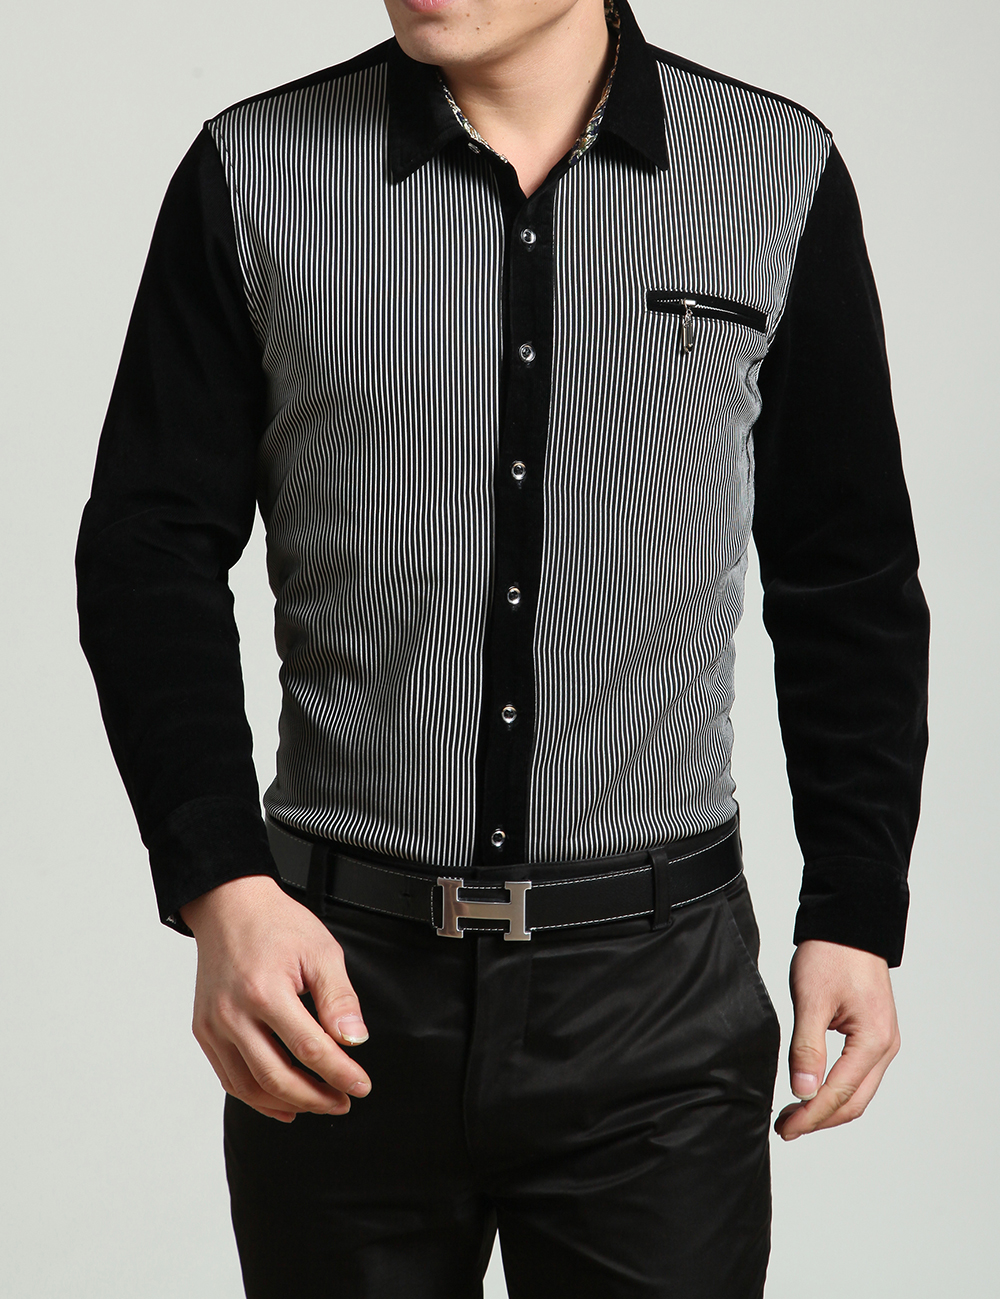 2015冬季男装新款加绒加厚上衣韩版宽松长袖衬衫休闲务商男士服装